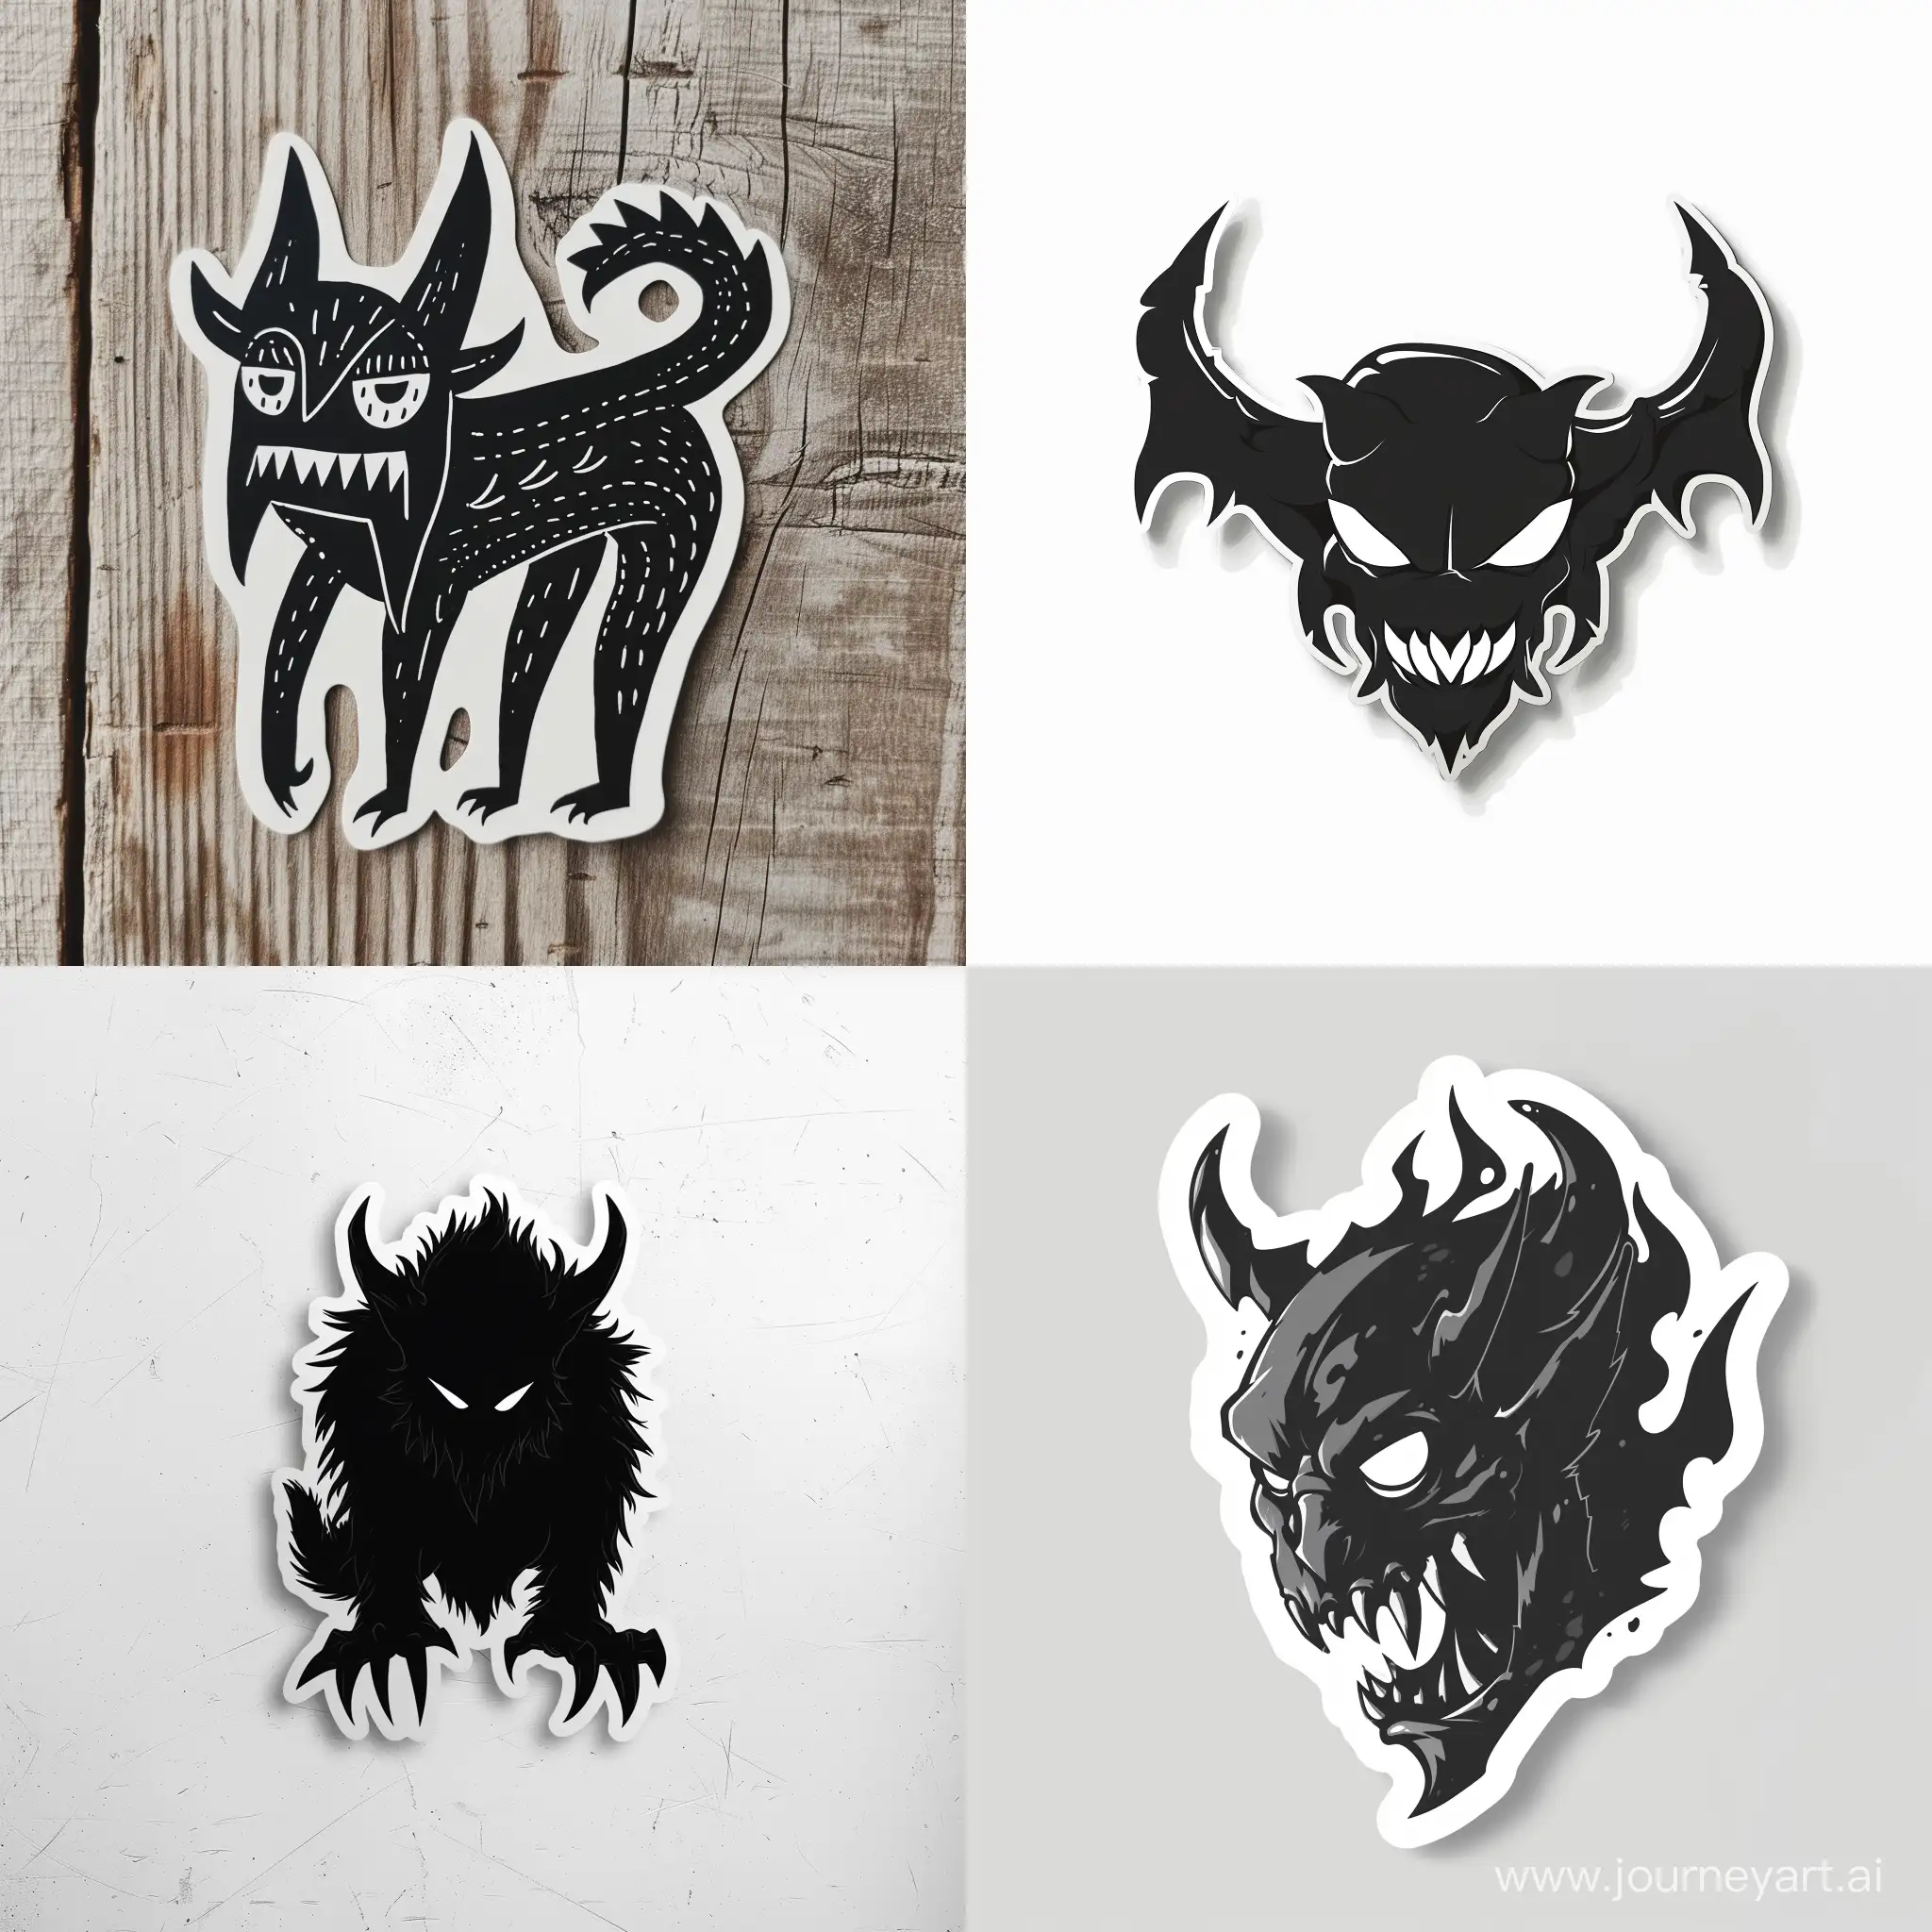 Minimalist-Black-Demon-Sticker-with-Striking-Visuals